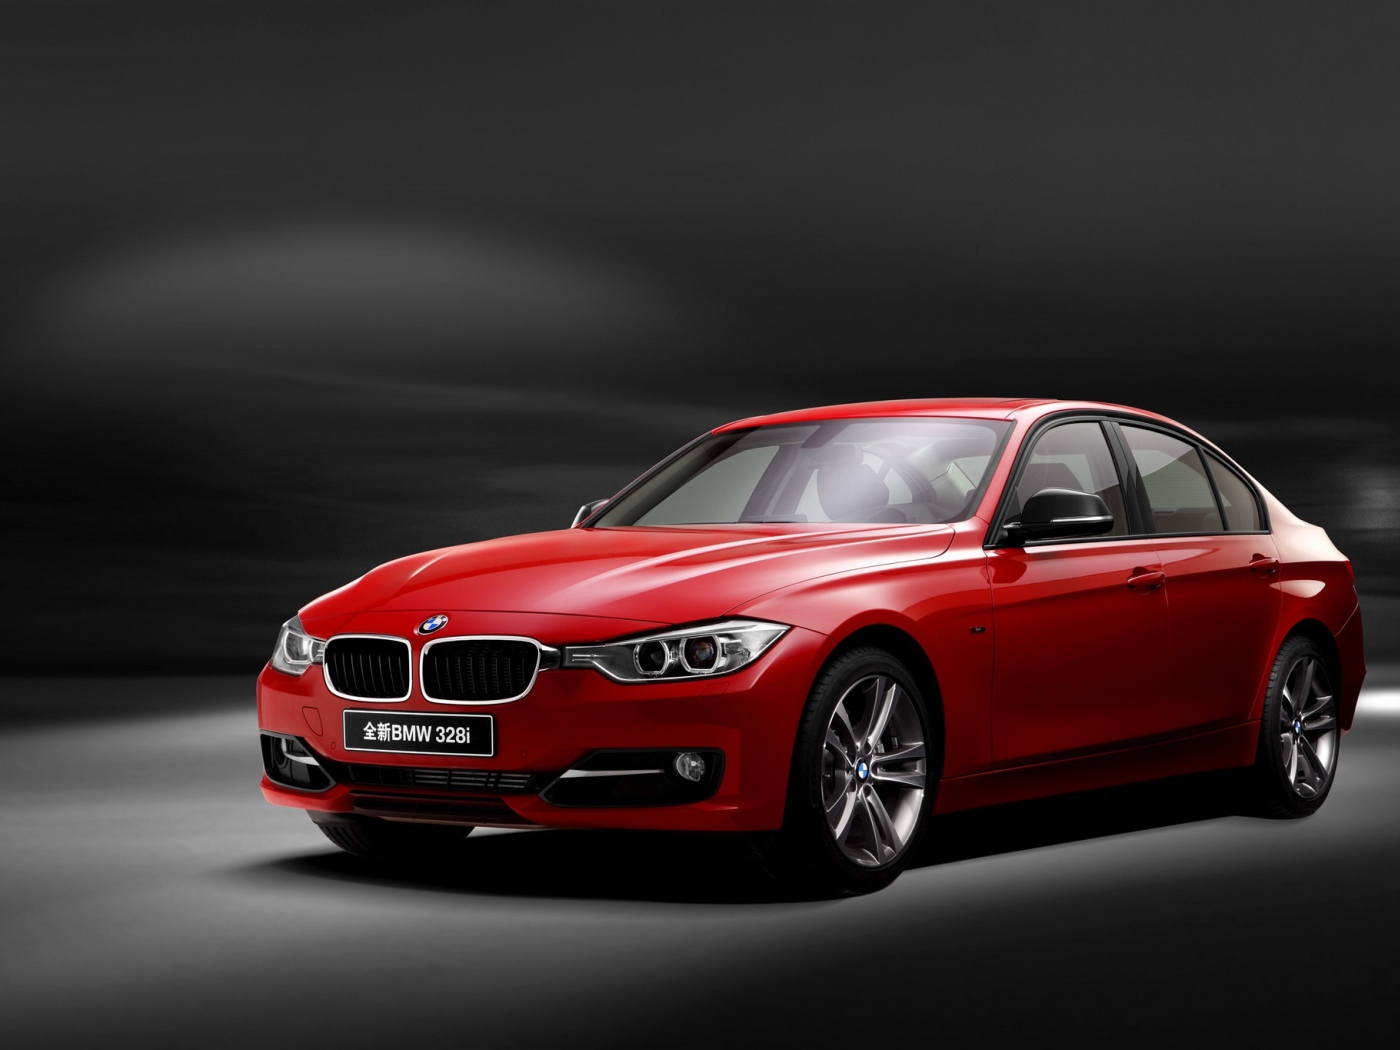 Красный автомобиль BMW 3 Series на сером фоне